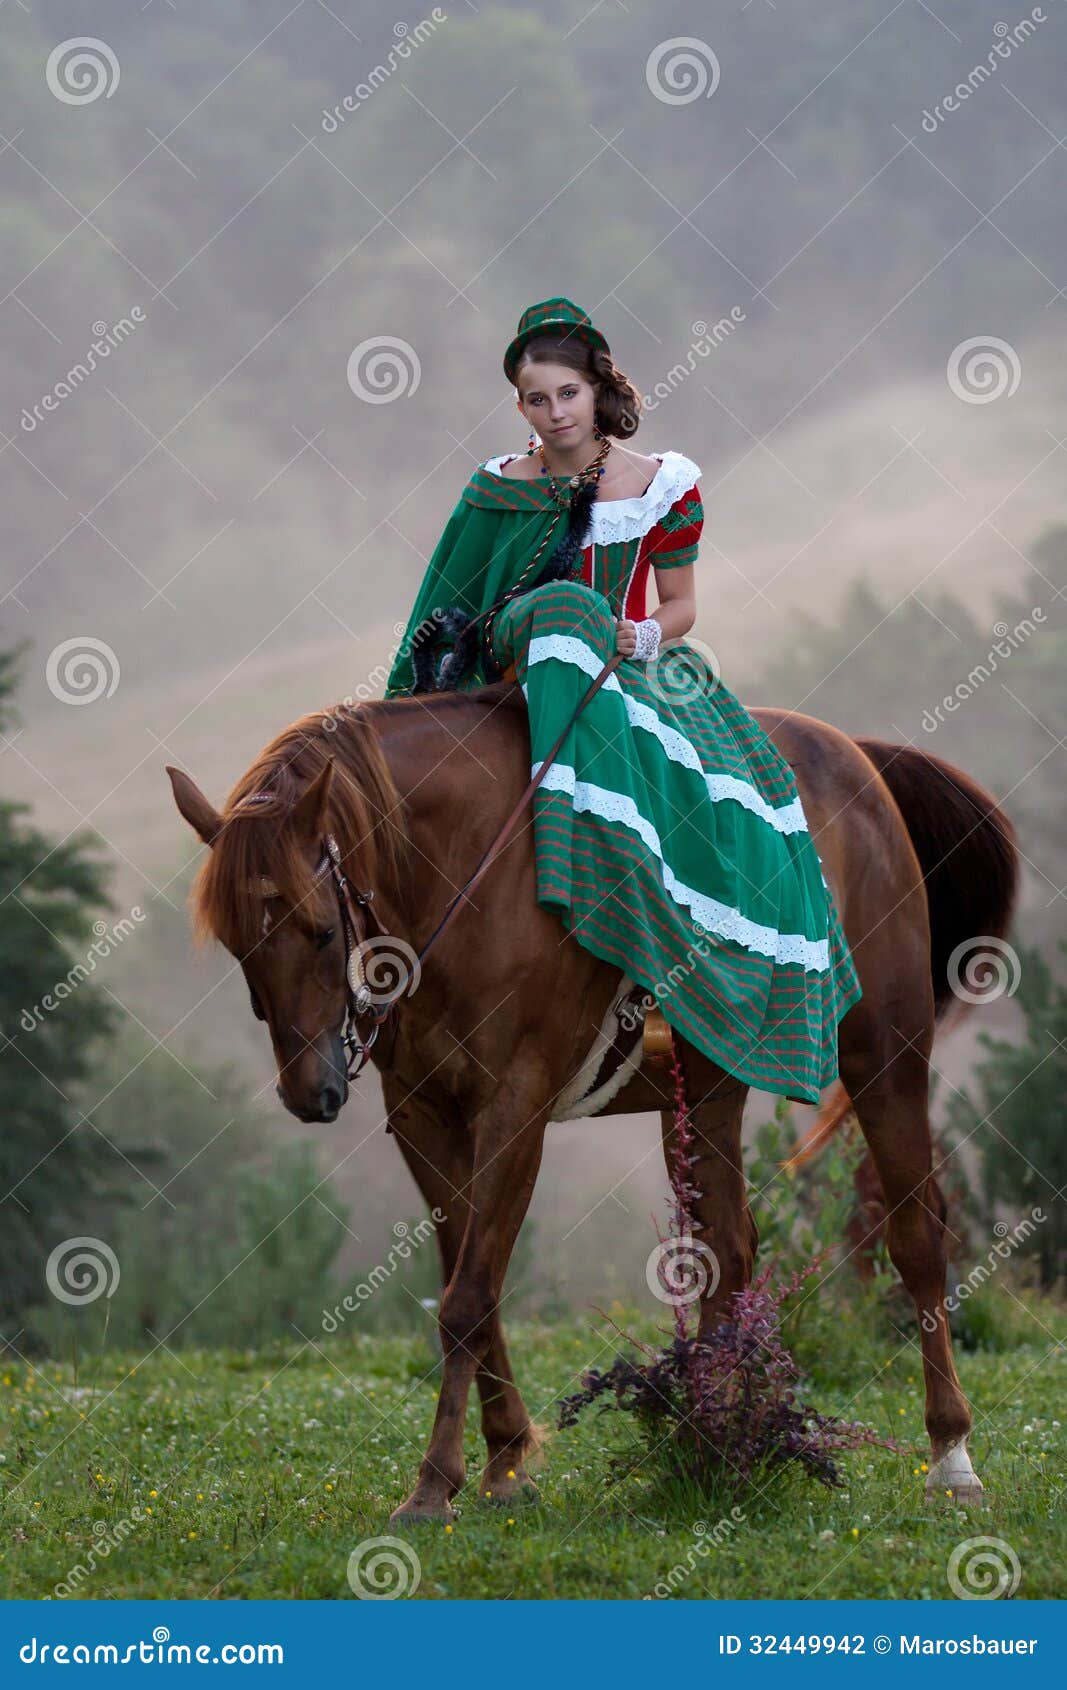 girl riding equestrian classicism dress